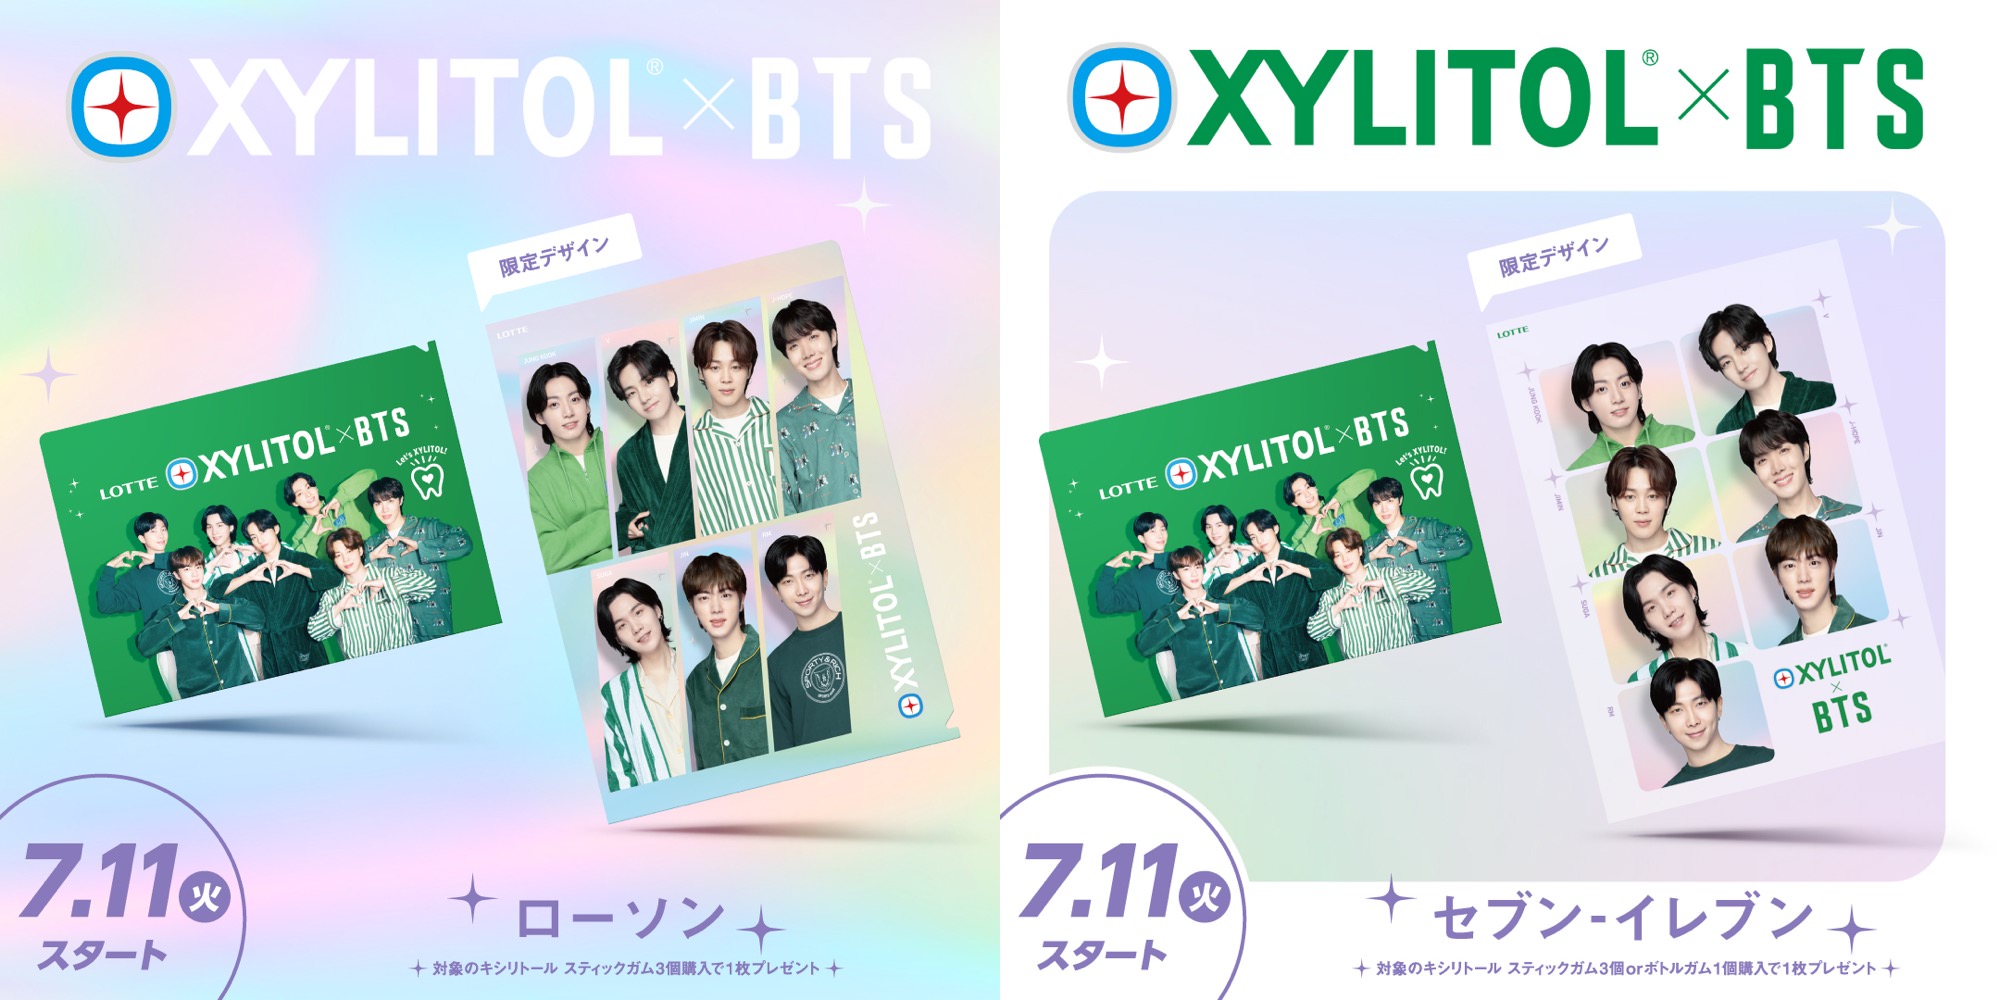 BTS × ロッテ 7月11日より全国コンビニ等にてクリアファイルプレゼント!